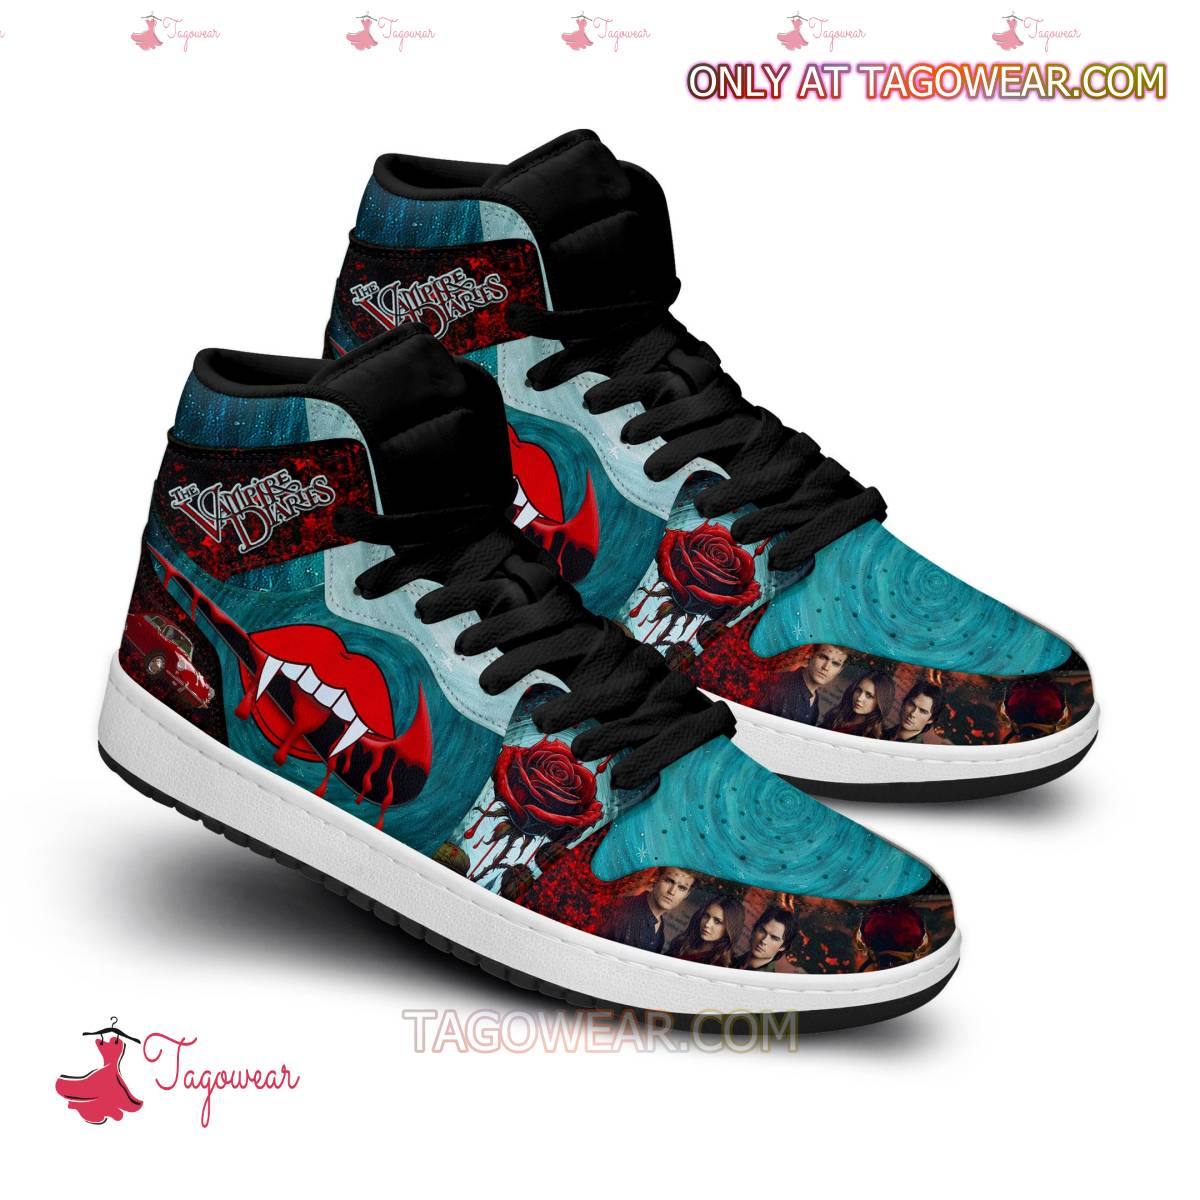 The Vampire Diaries Air Jordan High Top Shoes a